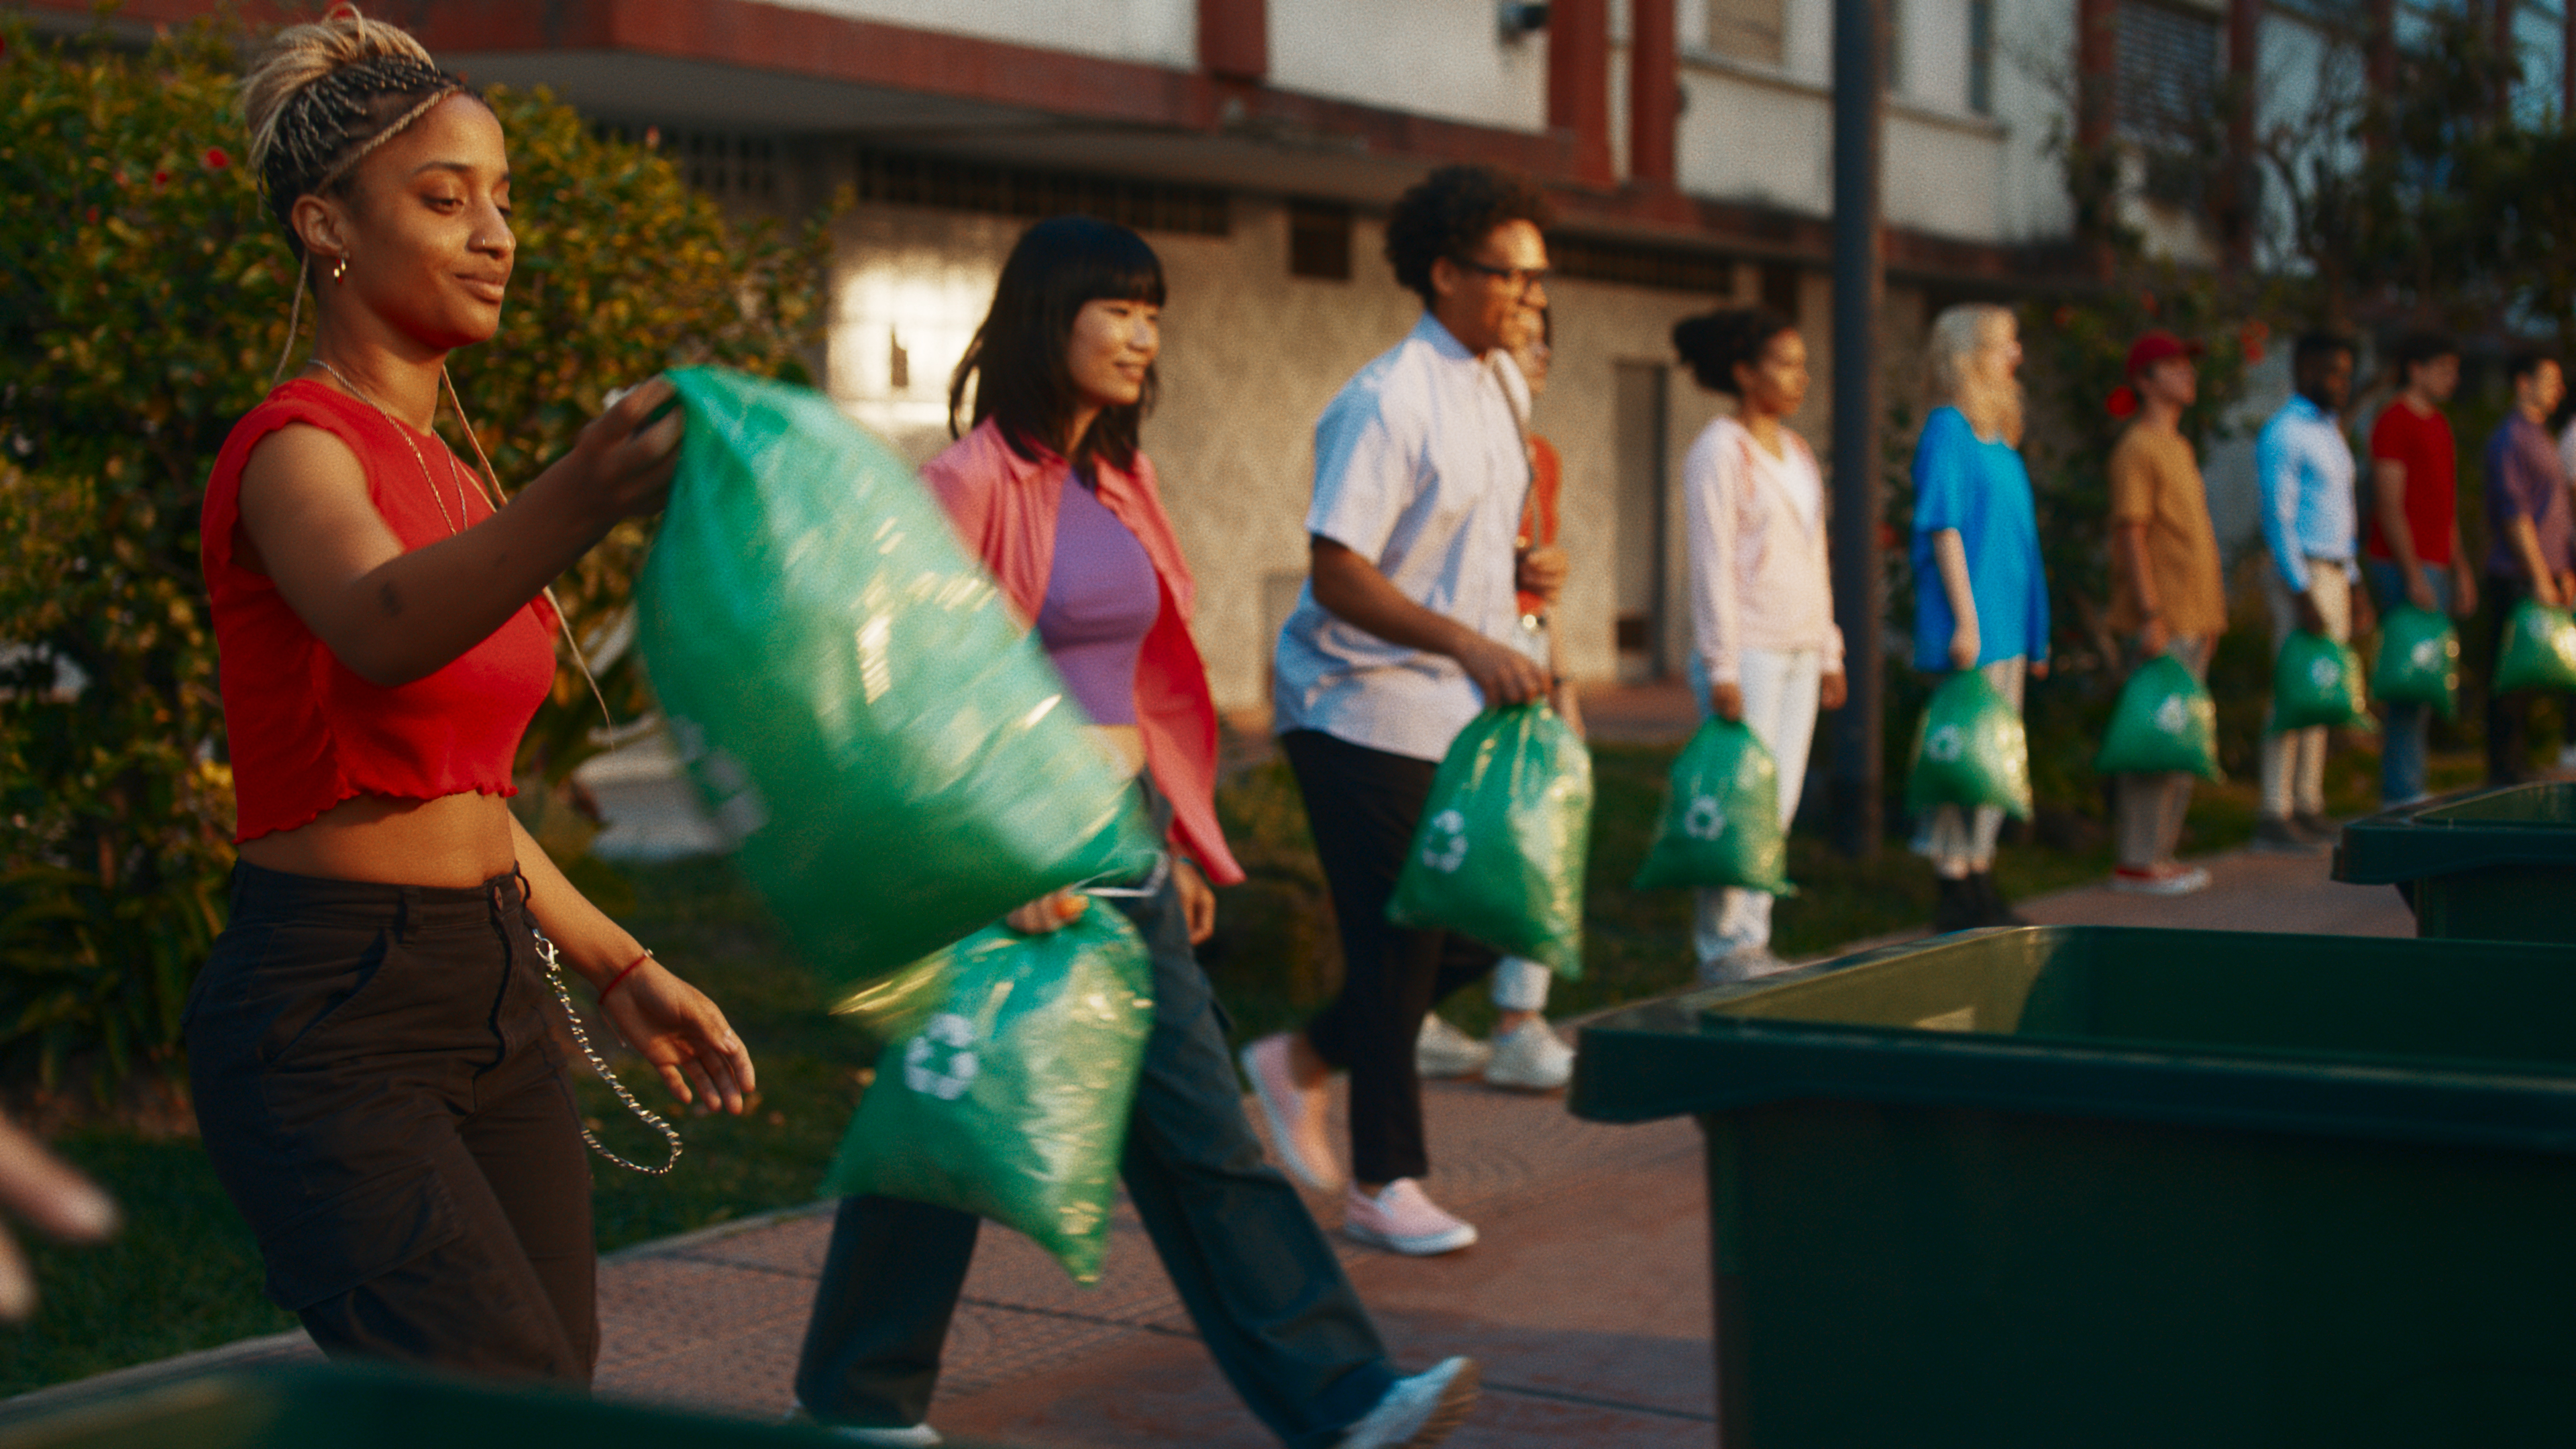 Hombres y mujeres en fila con bolsas verdes en sus manos.  La mujer en primer plano lleva su bolsa a un basurero.